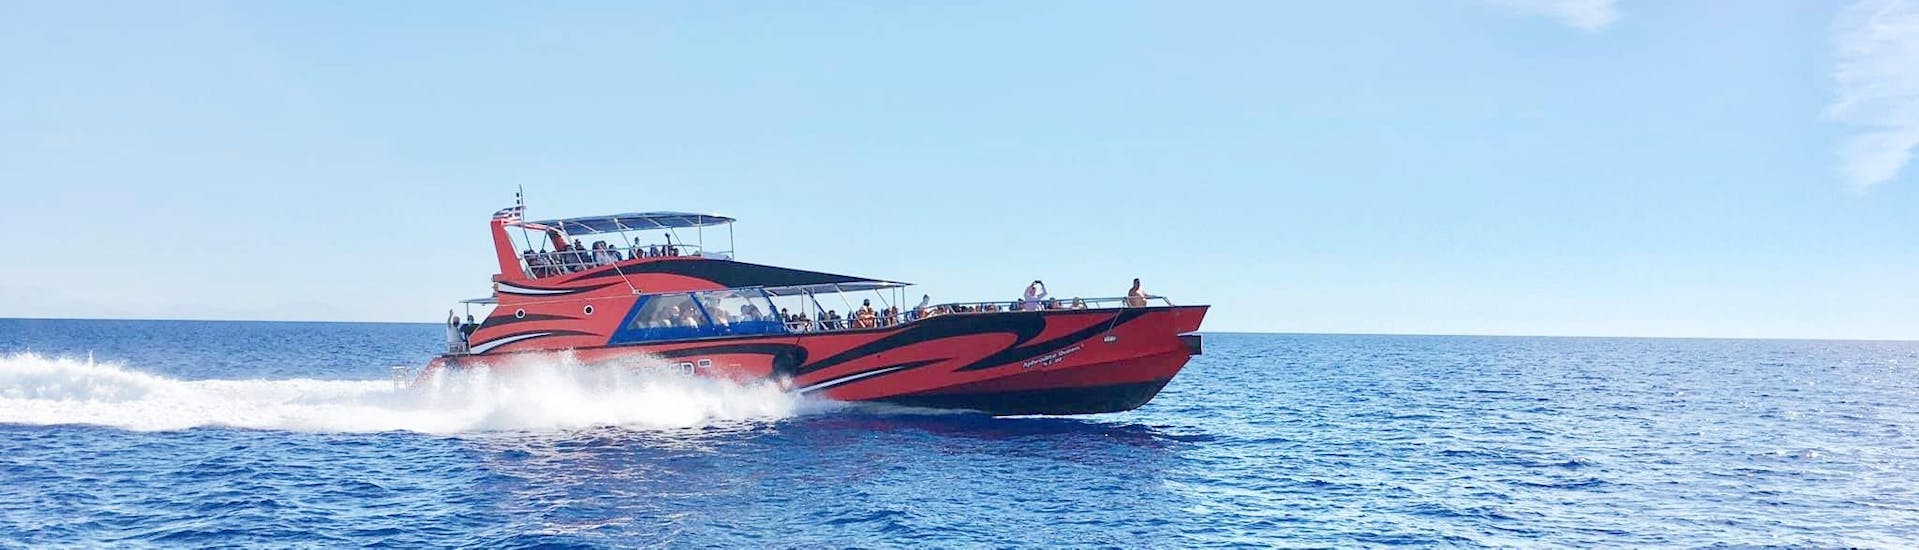 Das moderne Motorboot von Rhodes Sea Lines.